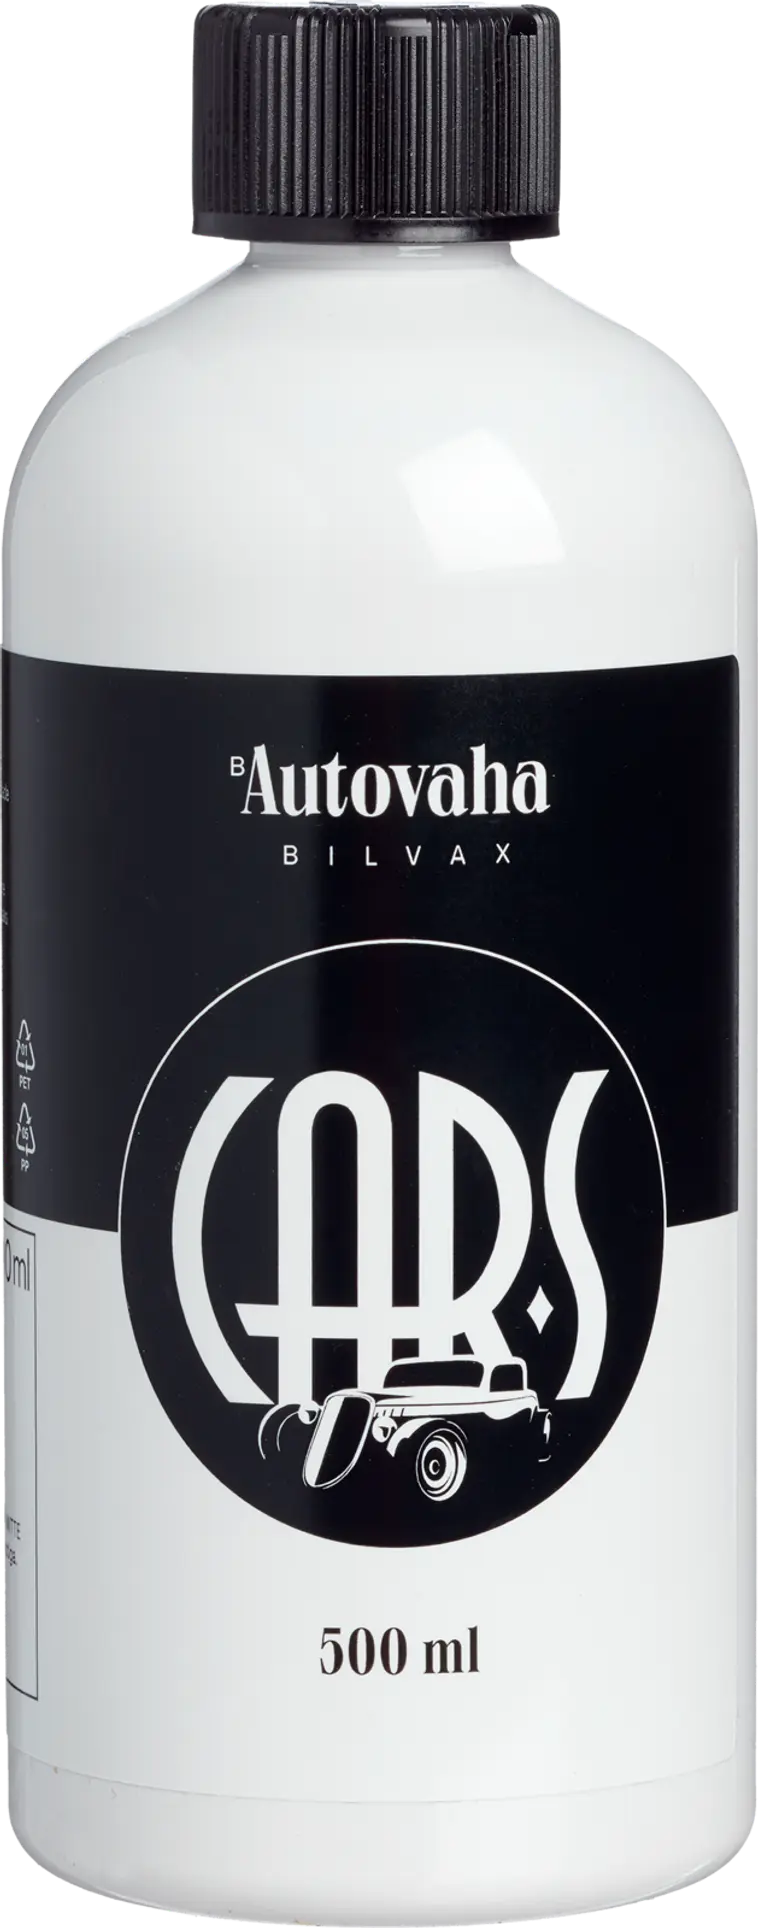 Car-S Autovaha 500 ml